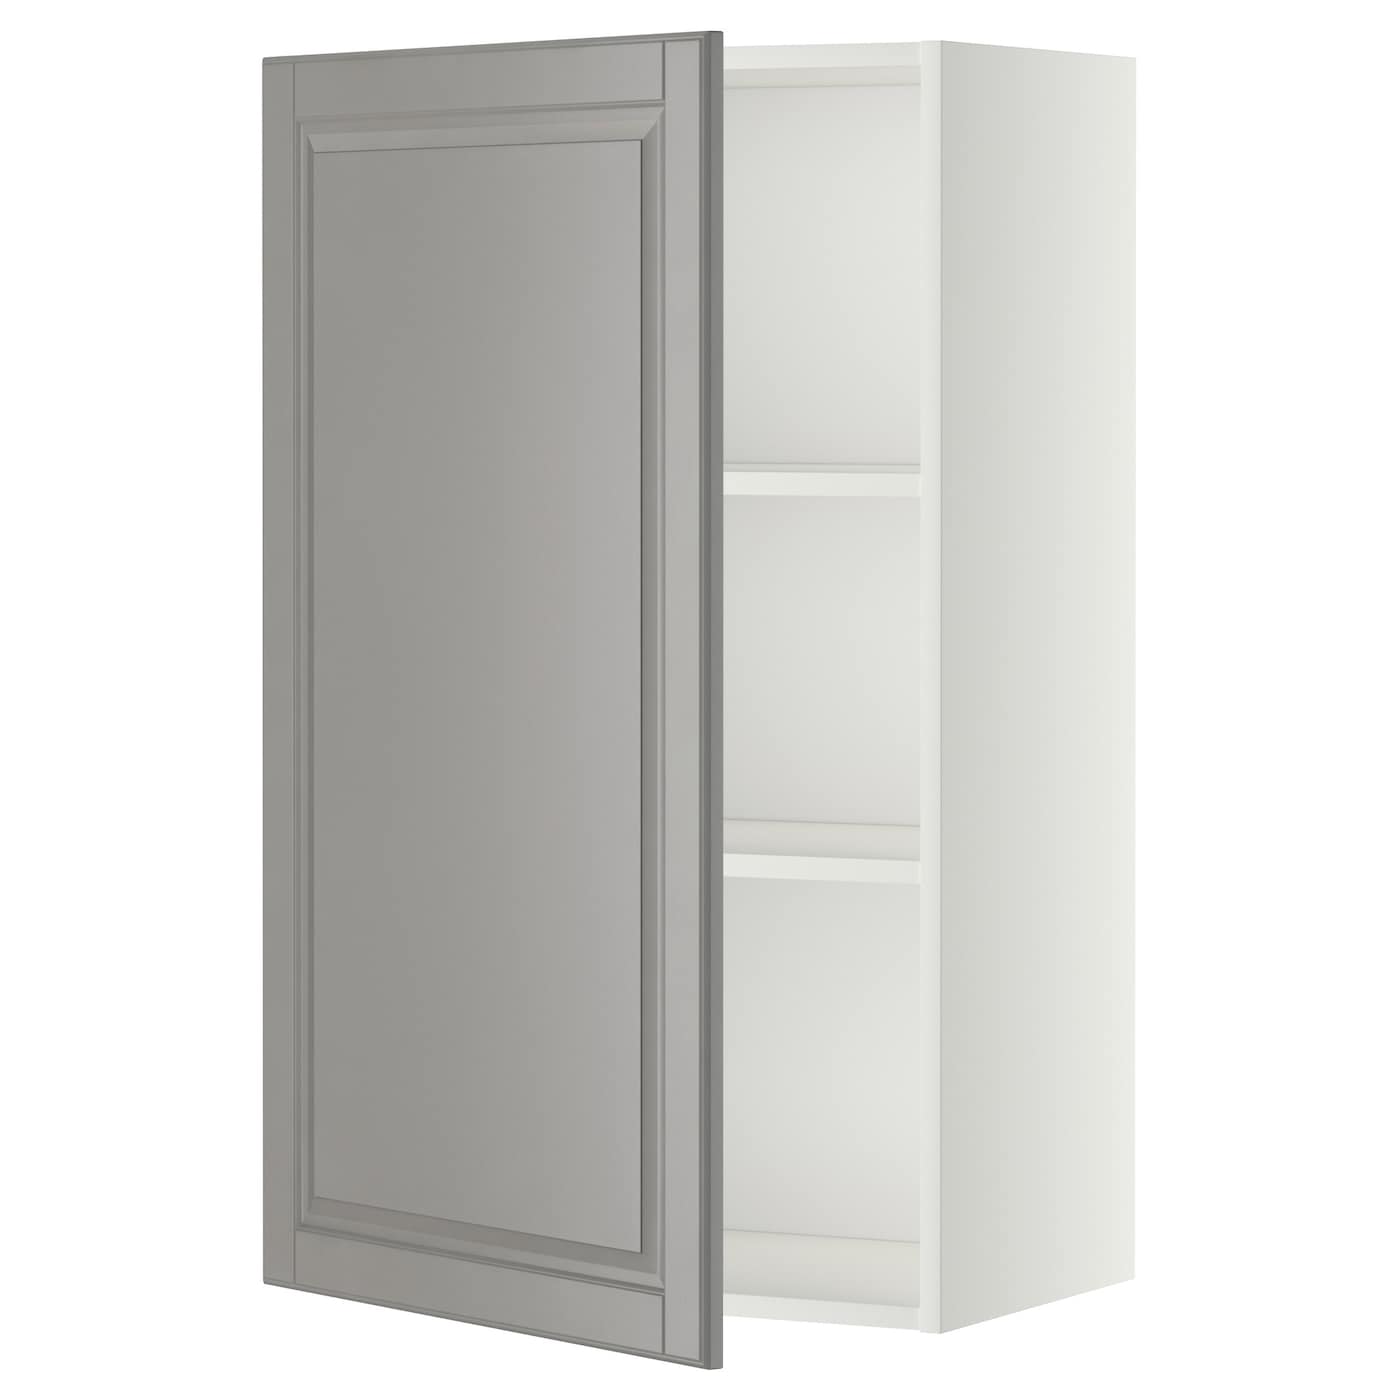 Навесной шкаф с полкой - METOD IKEA/ МЕТОД ИКЕА, 100х60 см, белый/серый